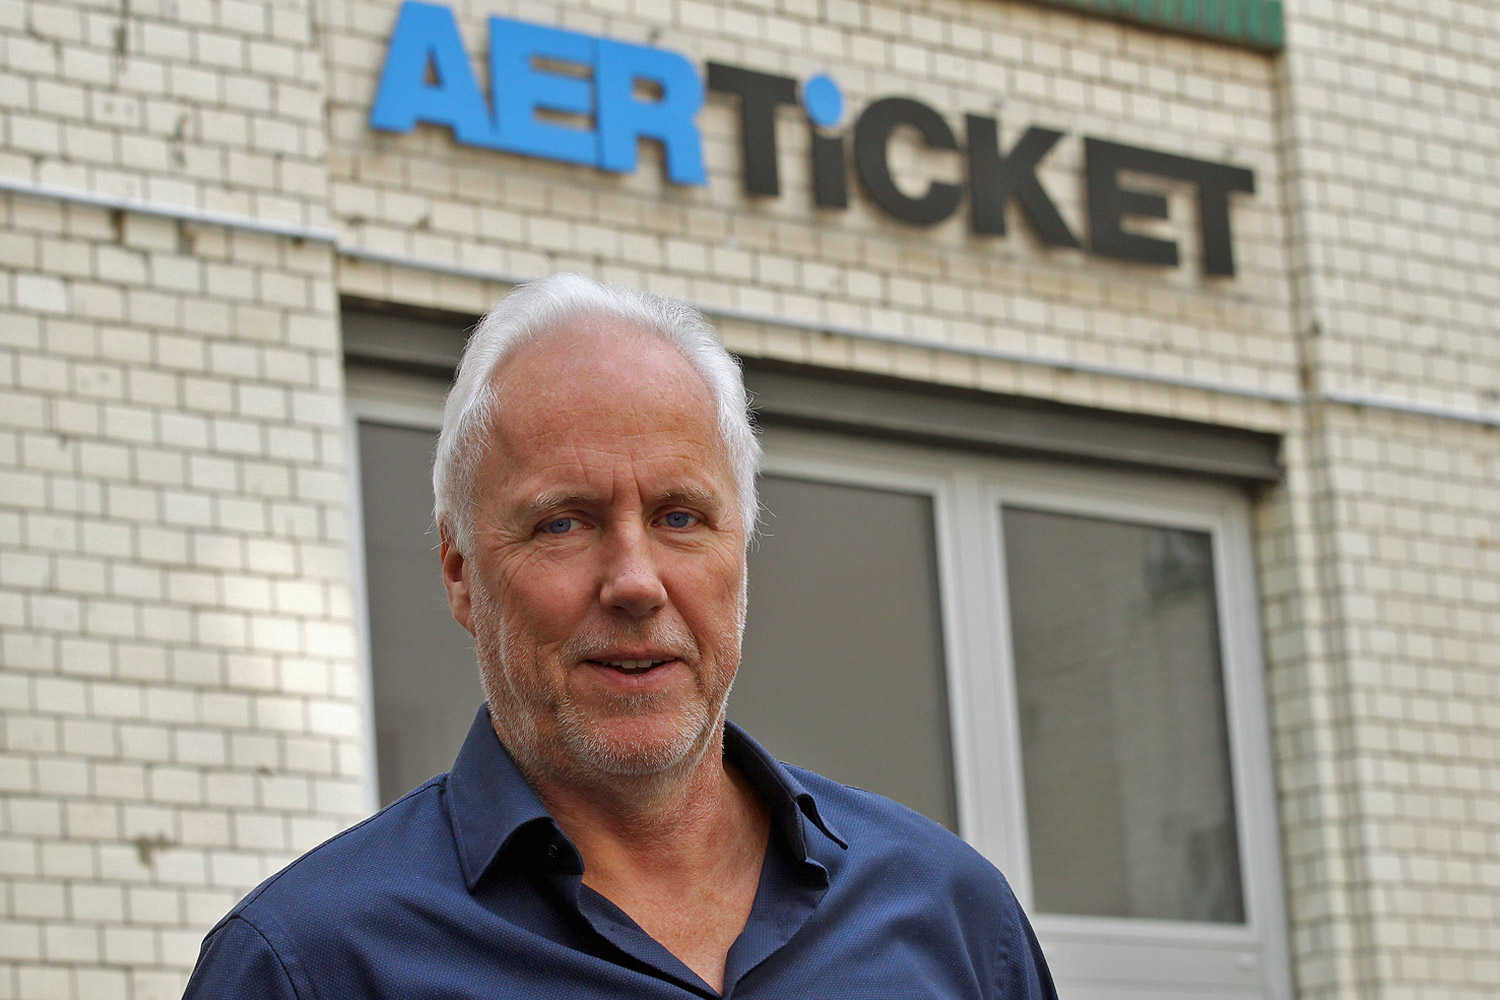 Verlangt mehr Fairness von Airlines: Aerticket-Chef Rainer Klee. Foto: Gerd Engelsmann/Berliner Zeitung